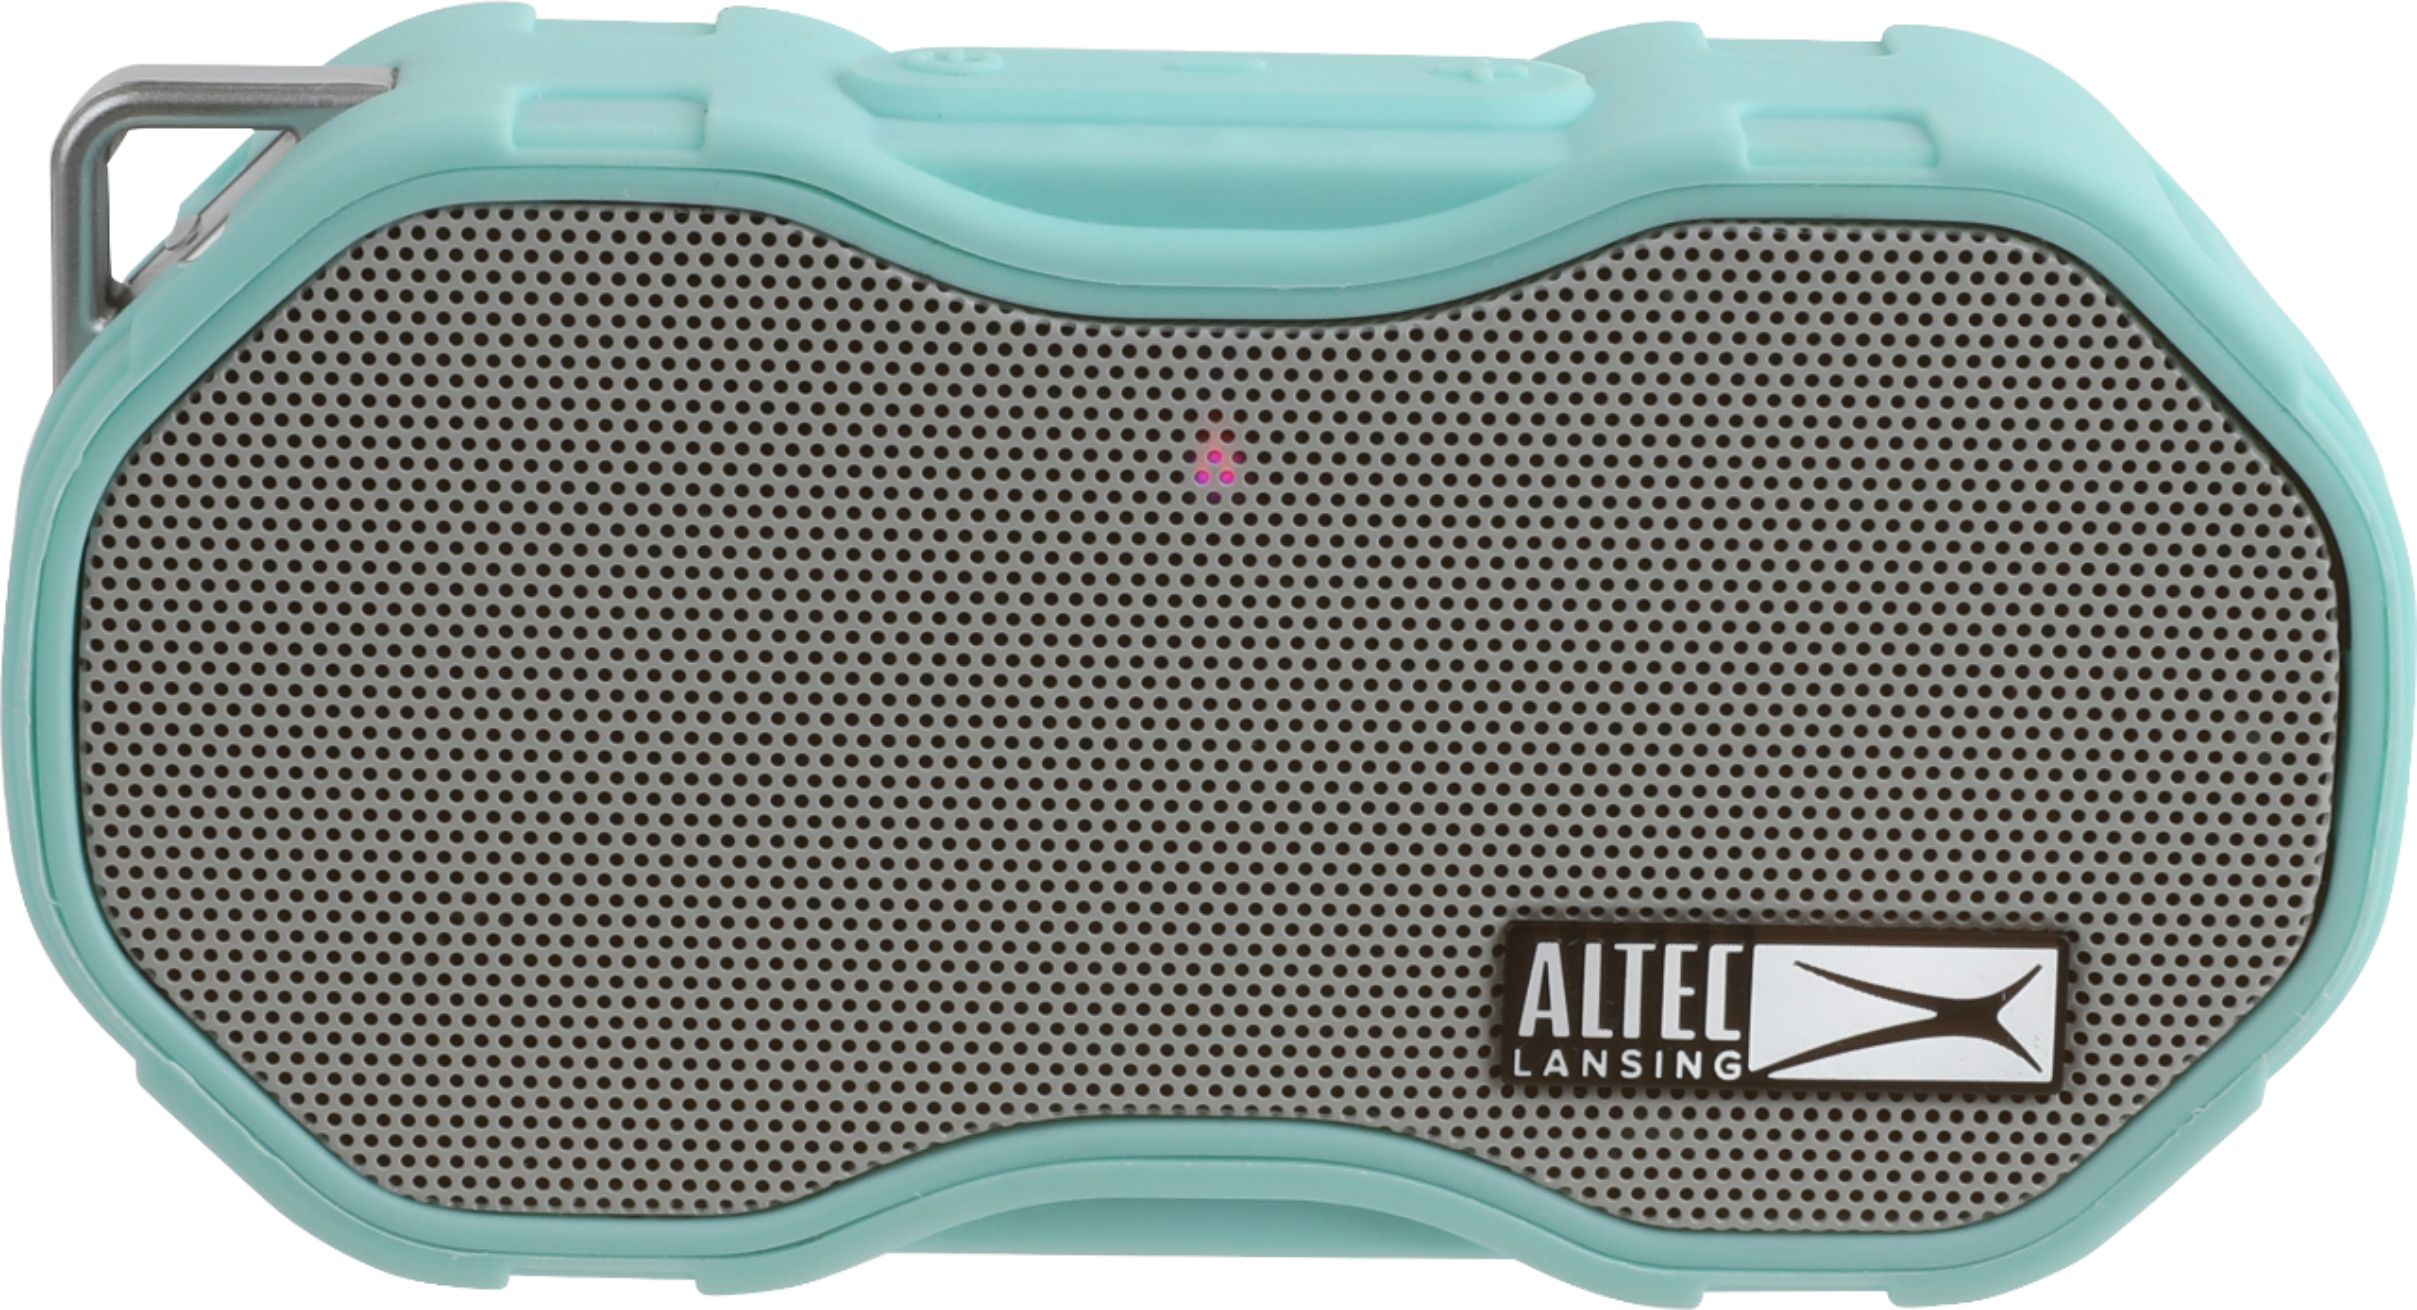 altec lansing speaker bluetooth pairing